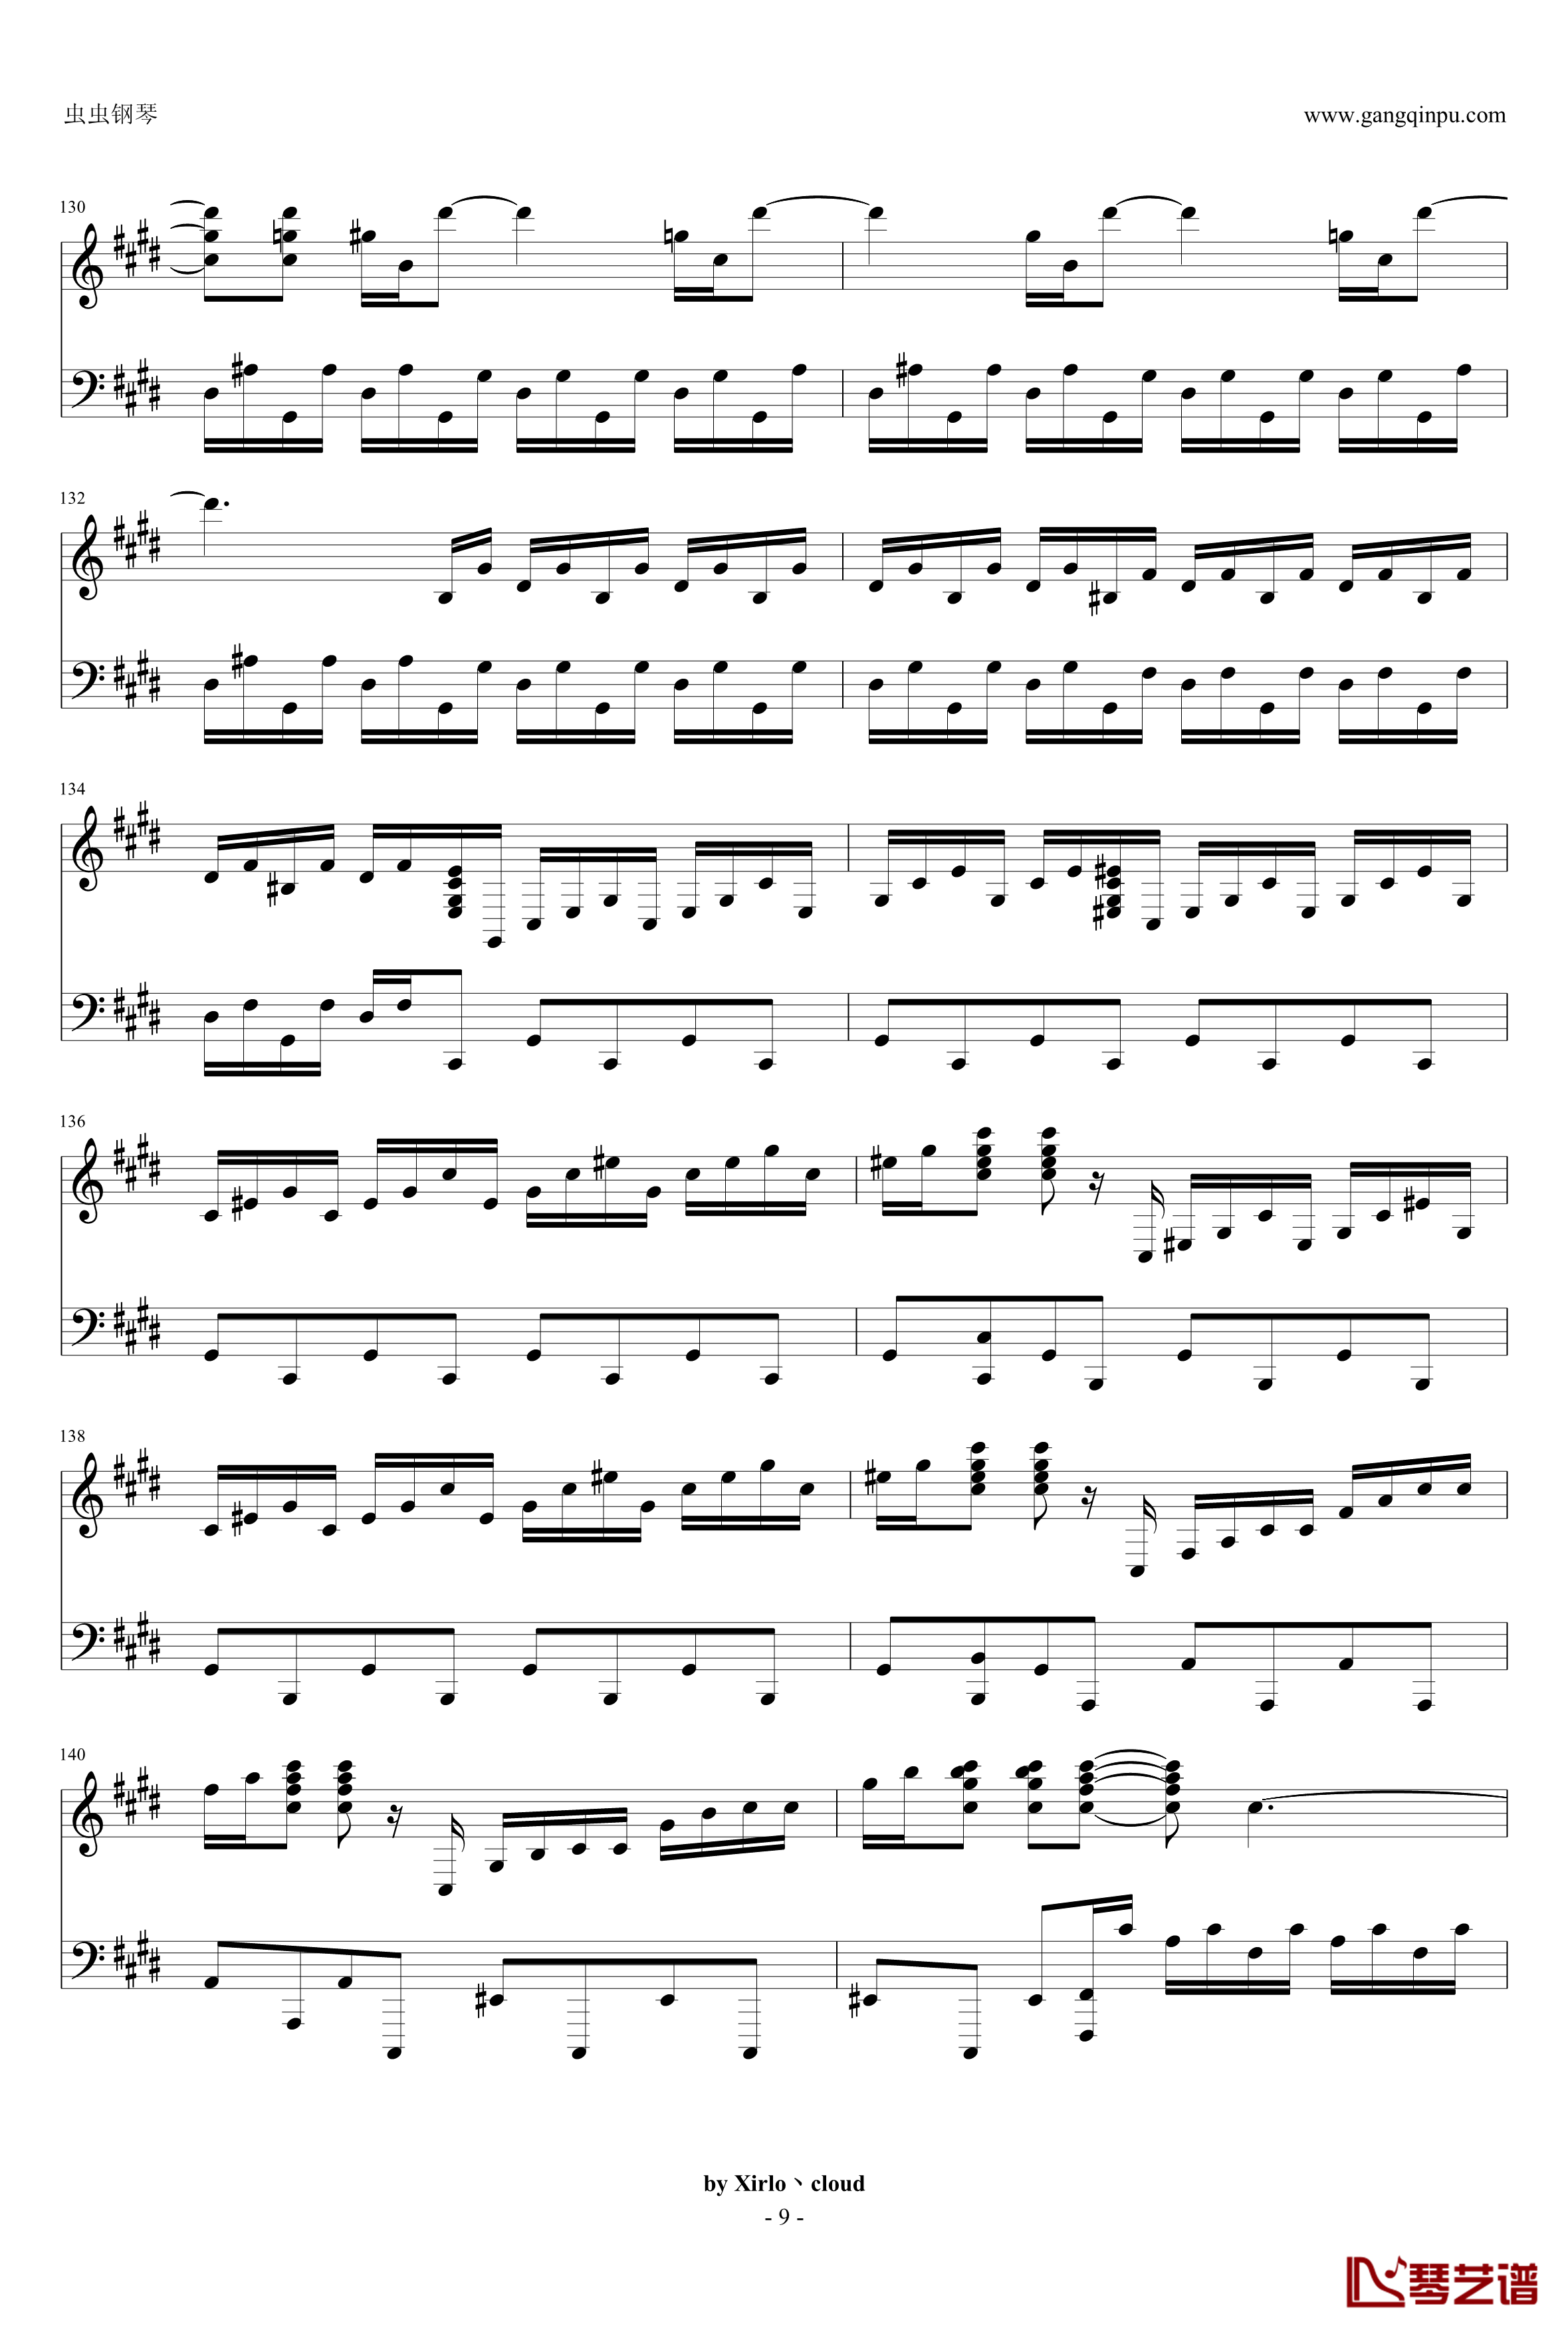 月光奏鸣曲钢琴谱-改编版-贝多芬-beethoven9